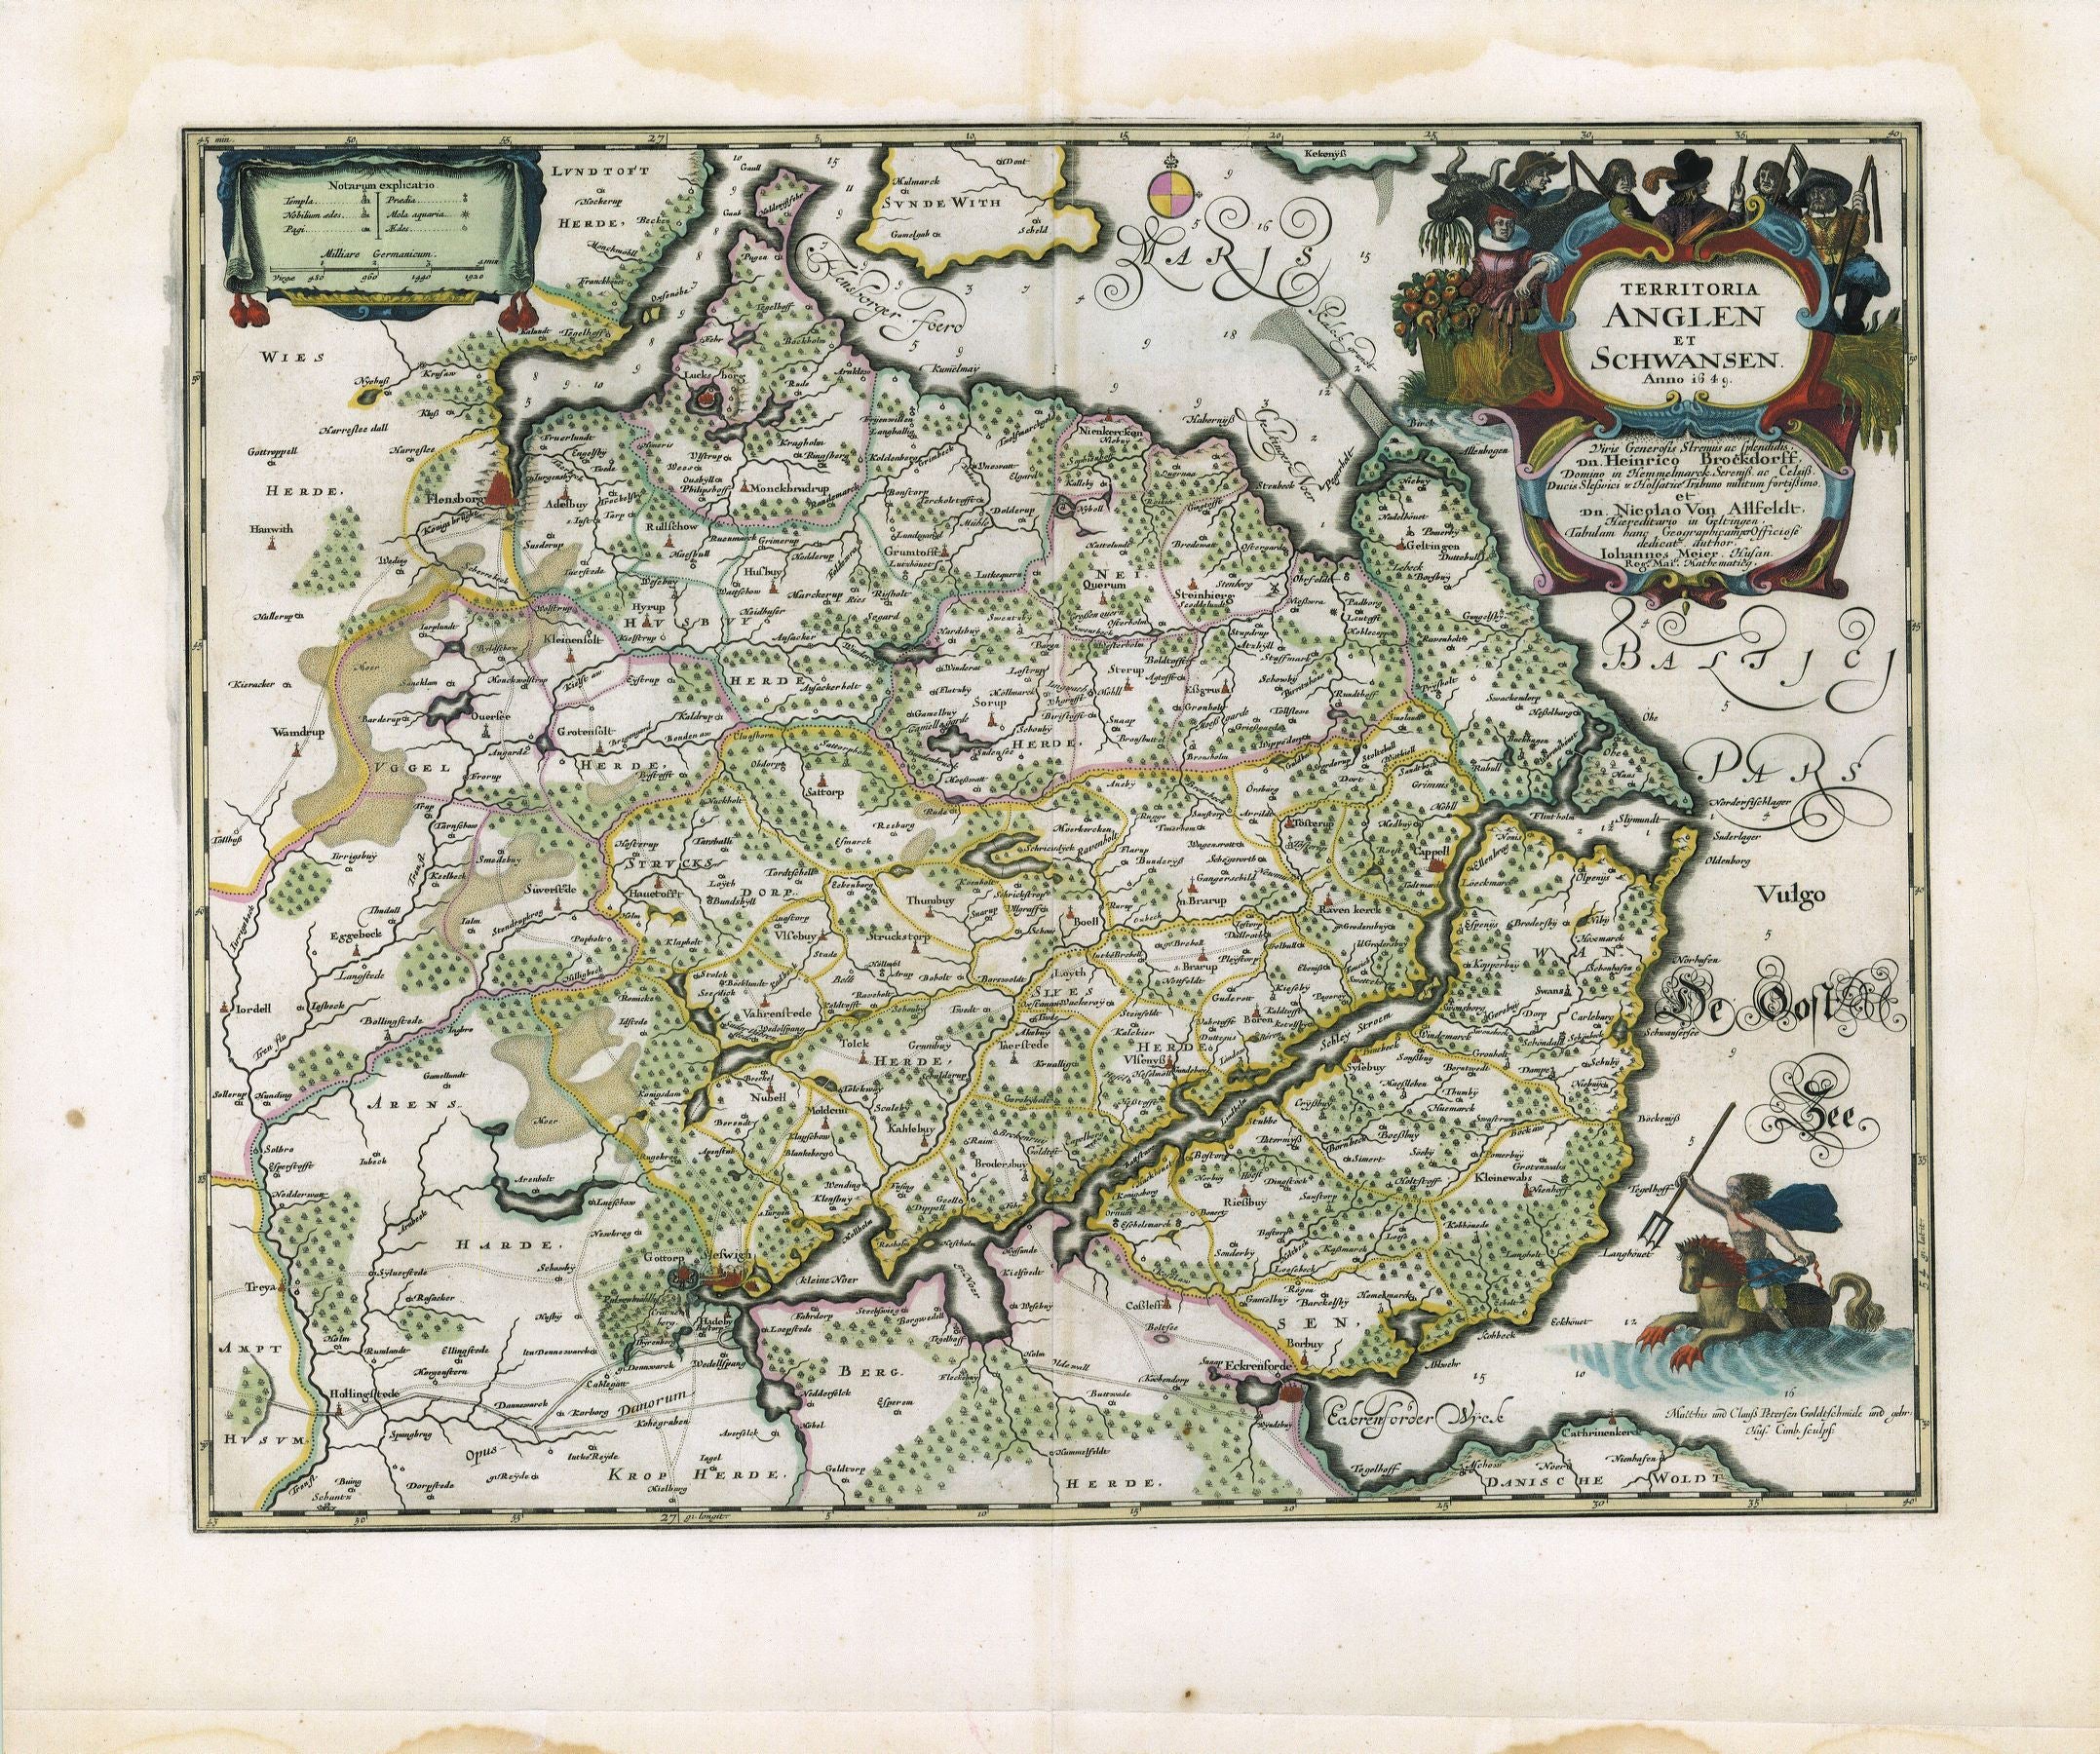 Schleswig-Holstein / Angeln im Jahr 1662 von Joan Blaeu & Johannes Mejer